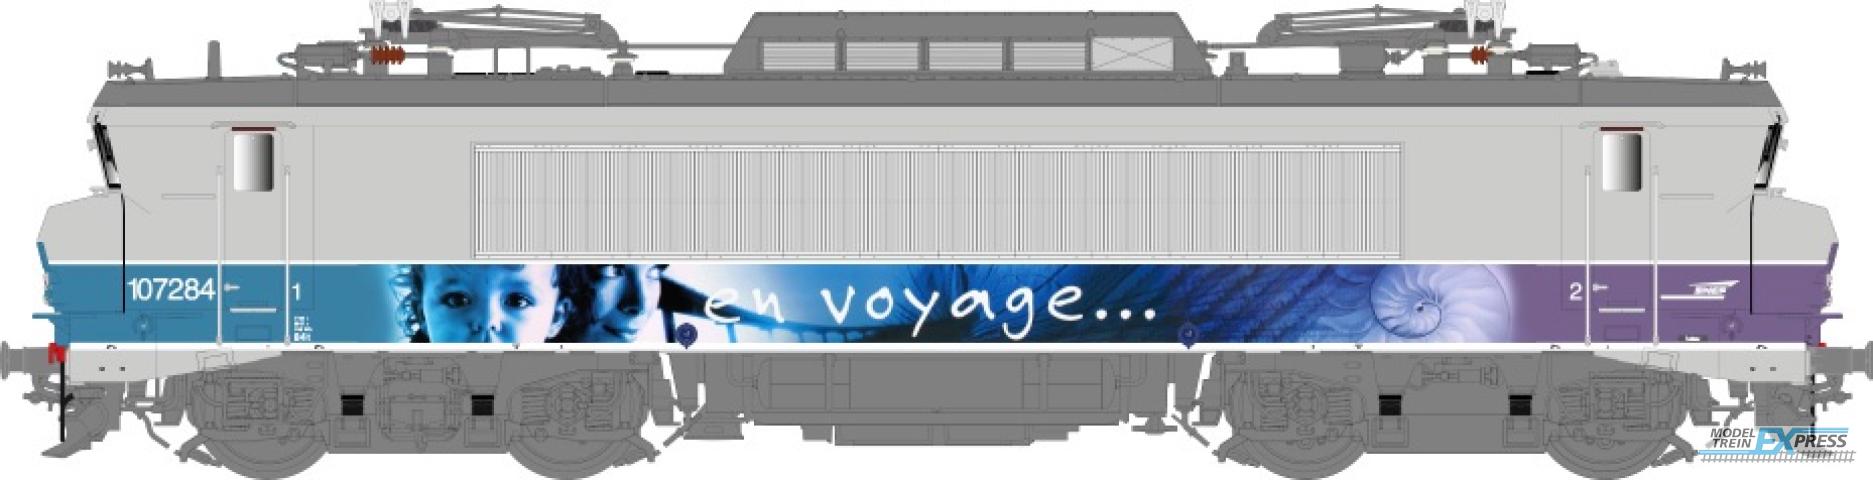 LS Models 10205 BB 7200, grijs/paars, En Voyage, pet logo, front nummer, grote cabine  /  Ep. V  /  SNCF  /  HO  /  DC  /  1 P.